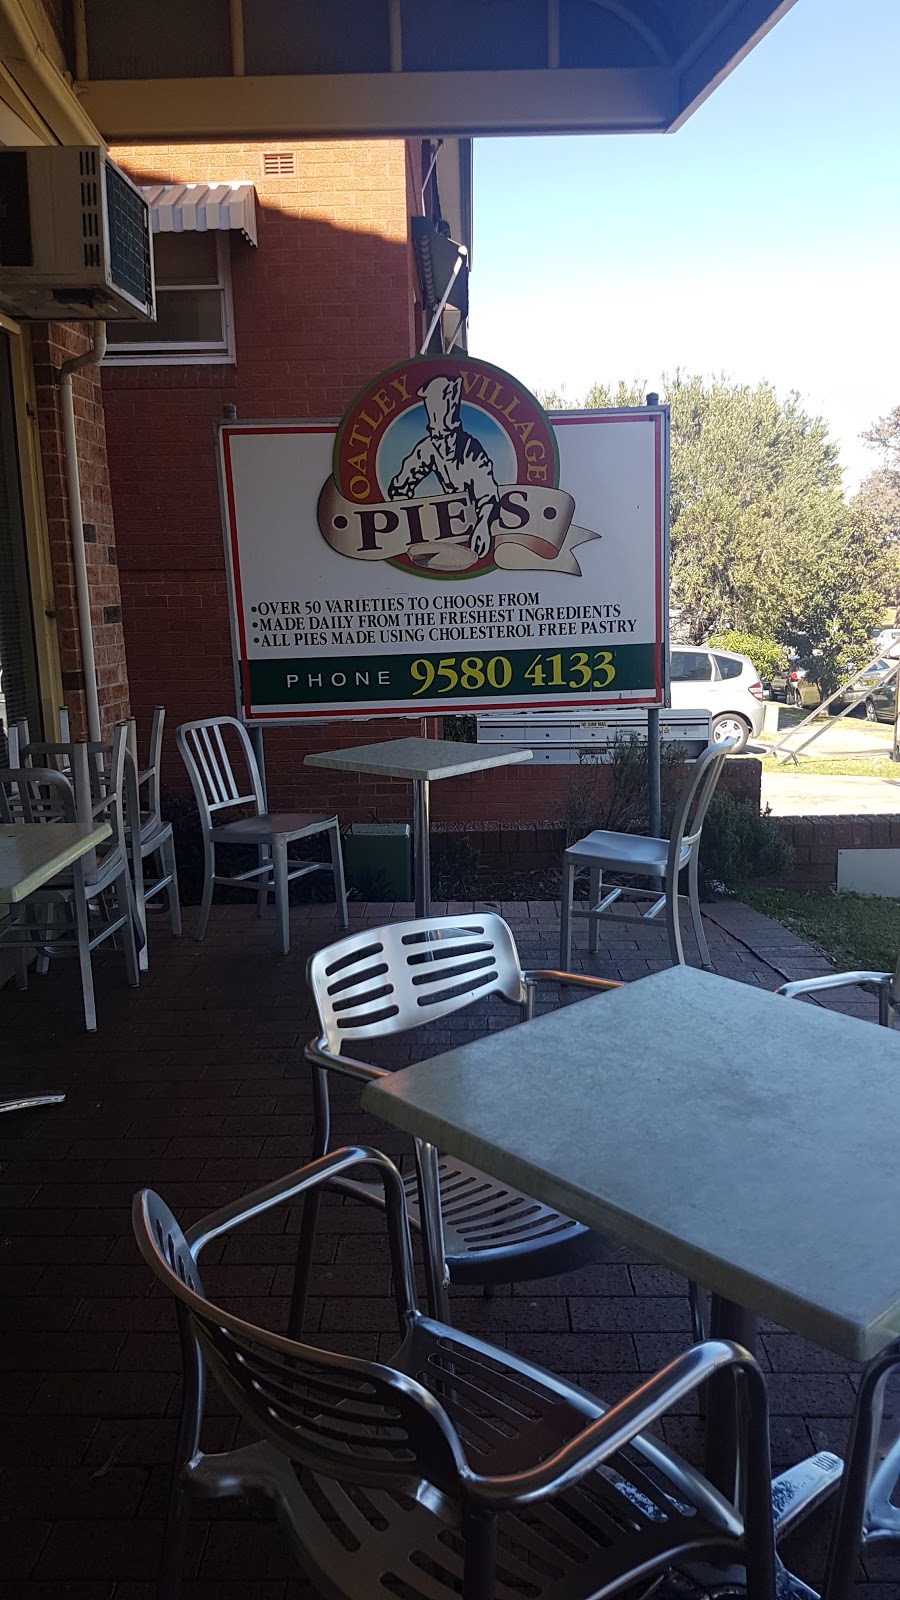 Oatley Village Pie Shop | bakery | 34 Oatley Ave, Oatley NSW 2223, Australia | 0295804133 OR +61 2 9580 4133